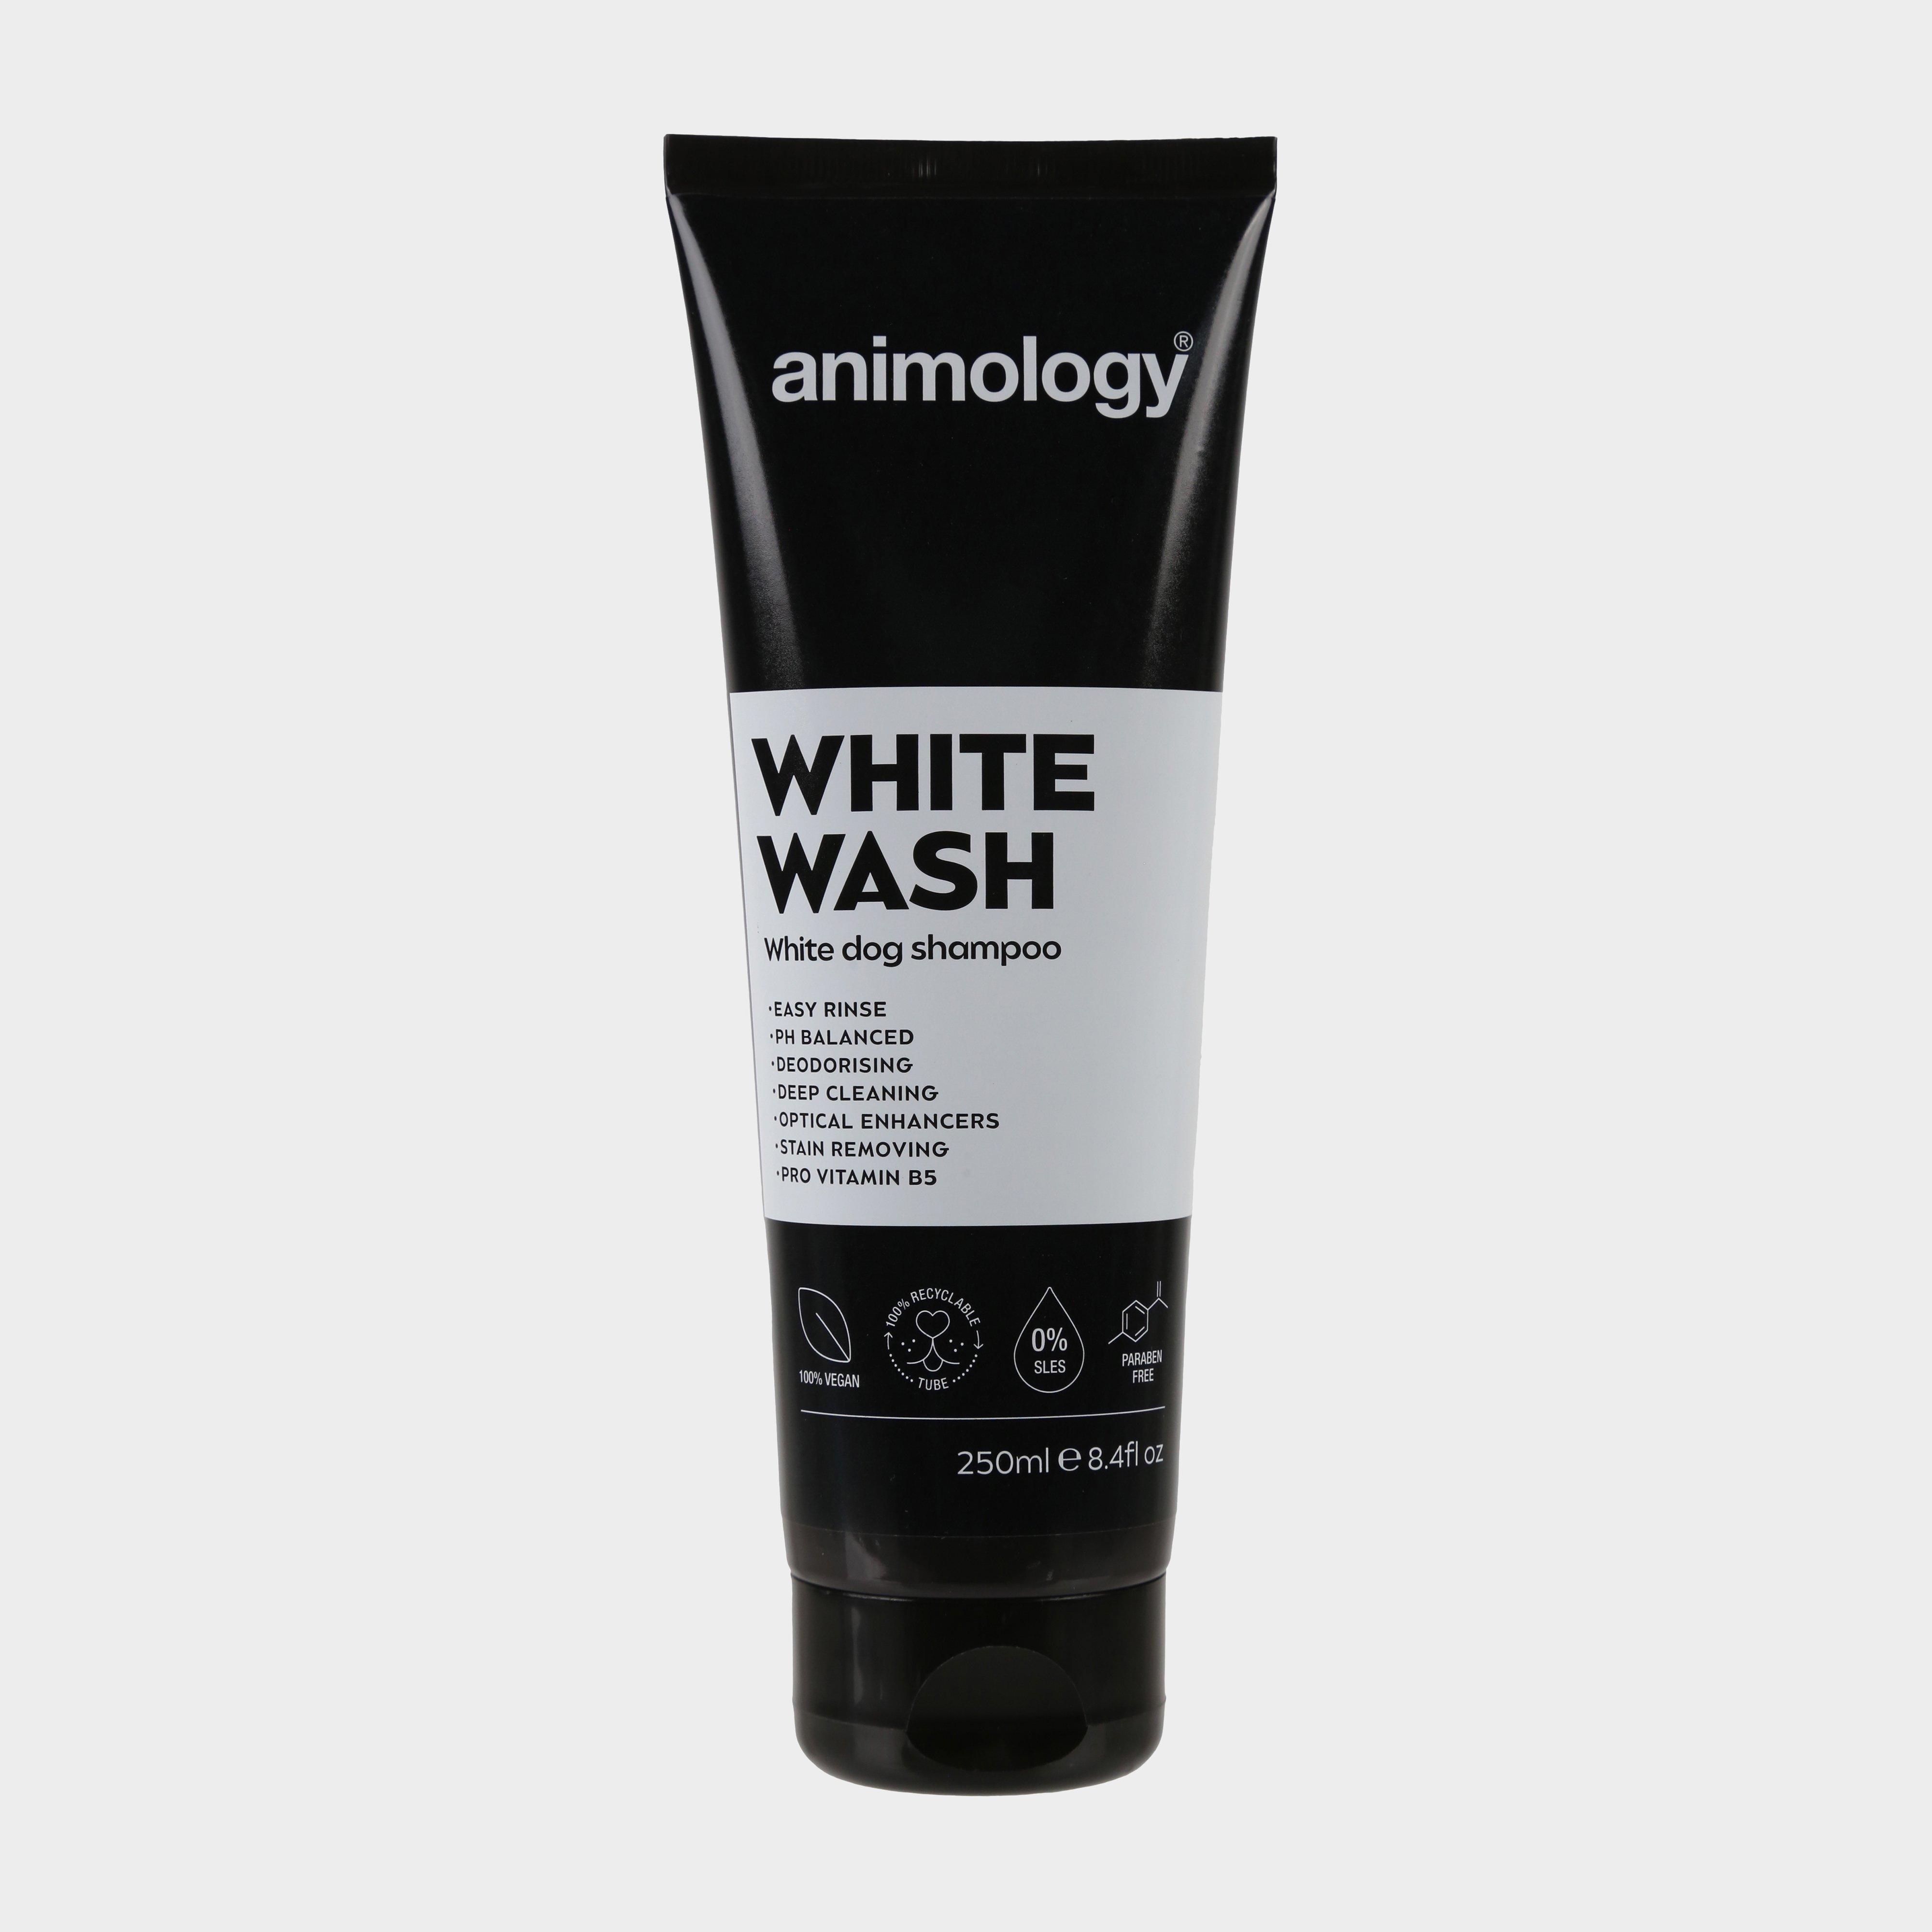 Image of Animology White Wash Dog Shampoo, White